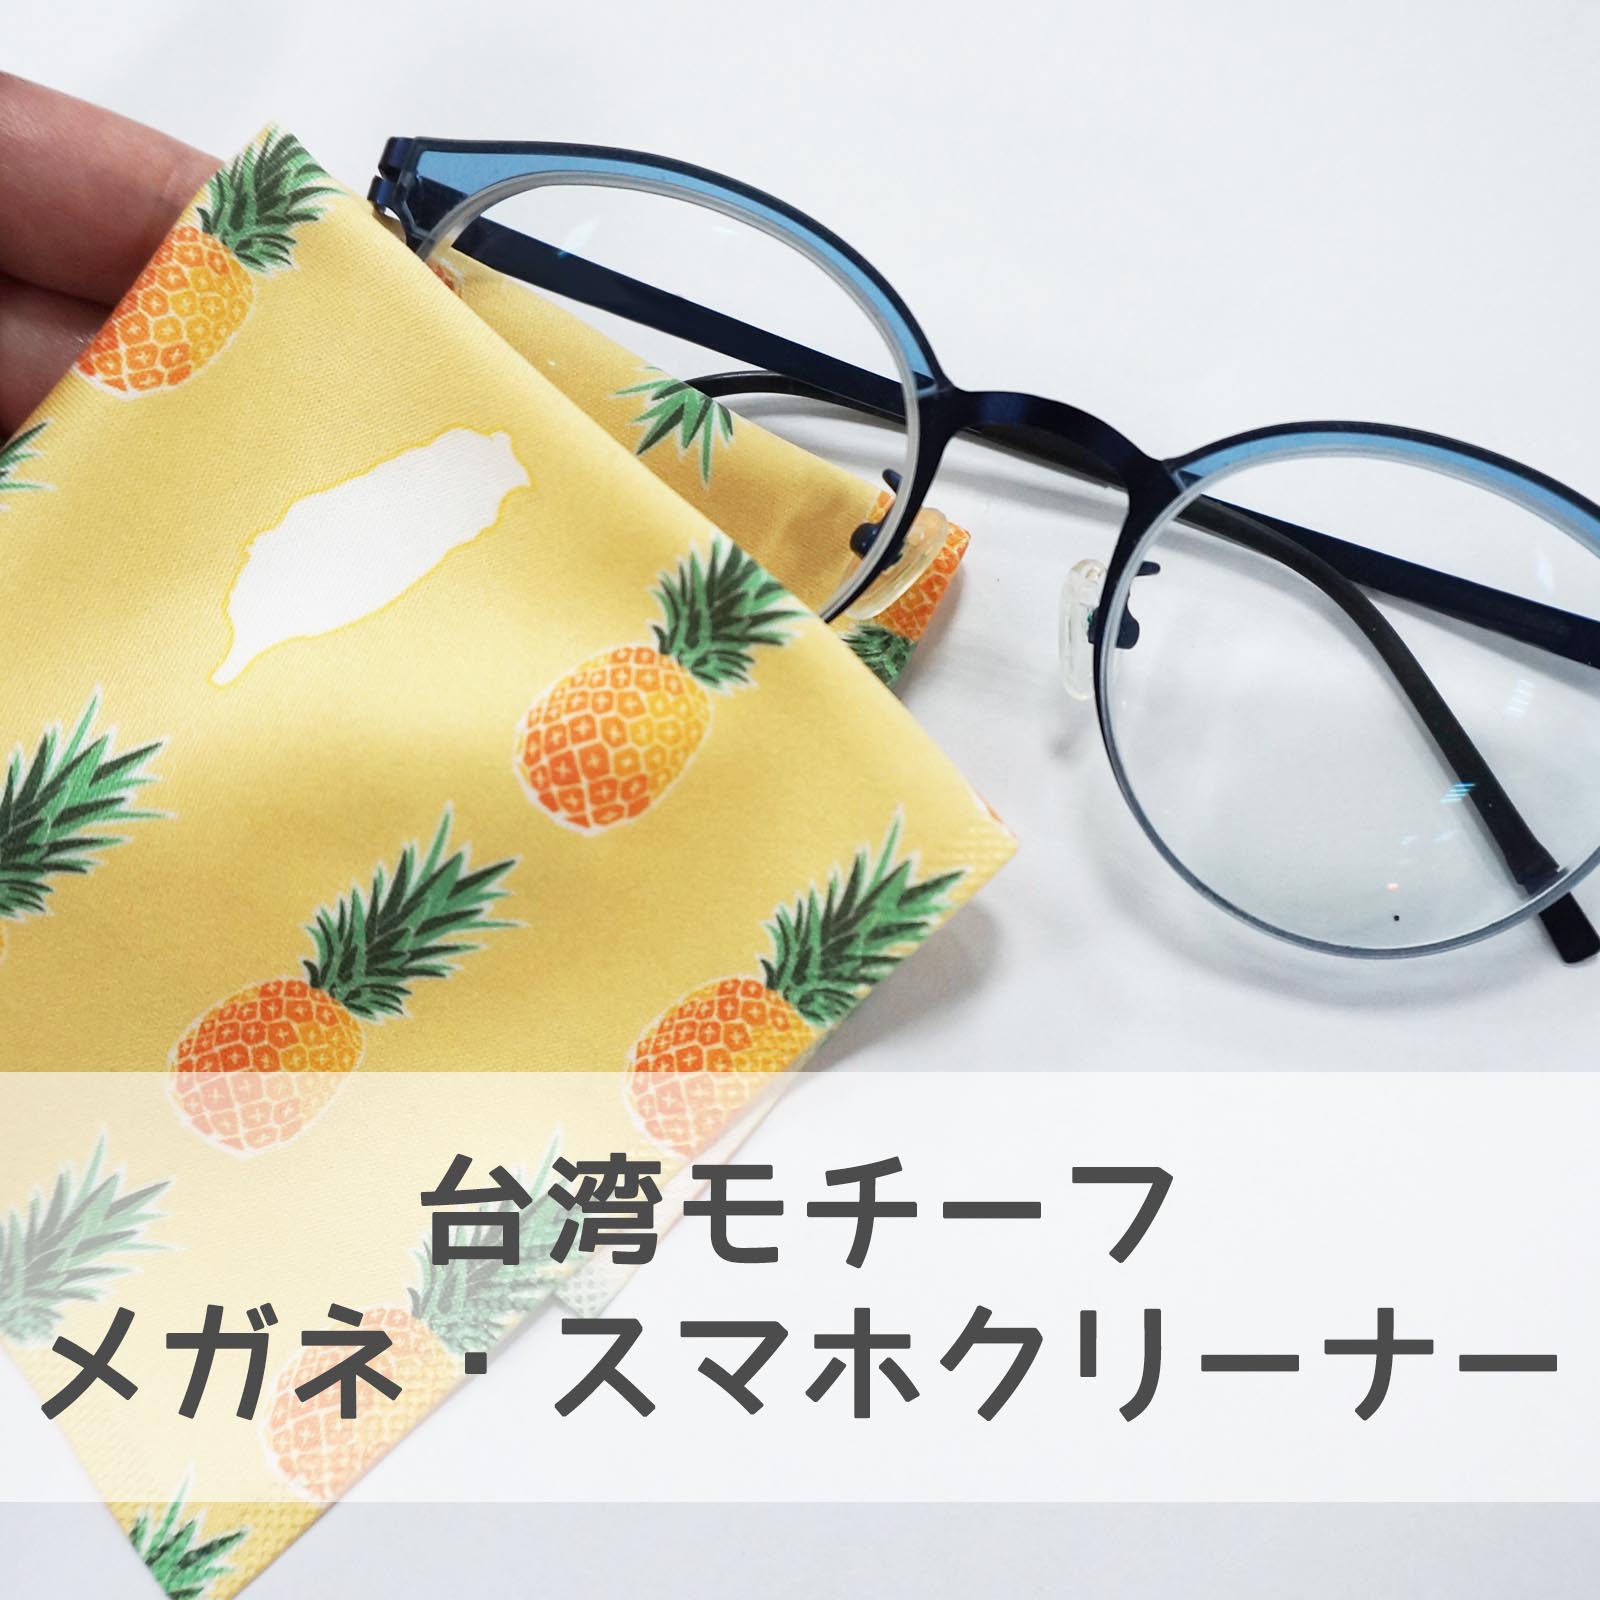 即納 万用 メガネ拭き クリーンクロス 特殊な繊維を採用 拭き取り制性 吸水性に優れ 台湾風 プレゼント